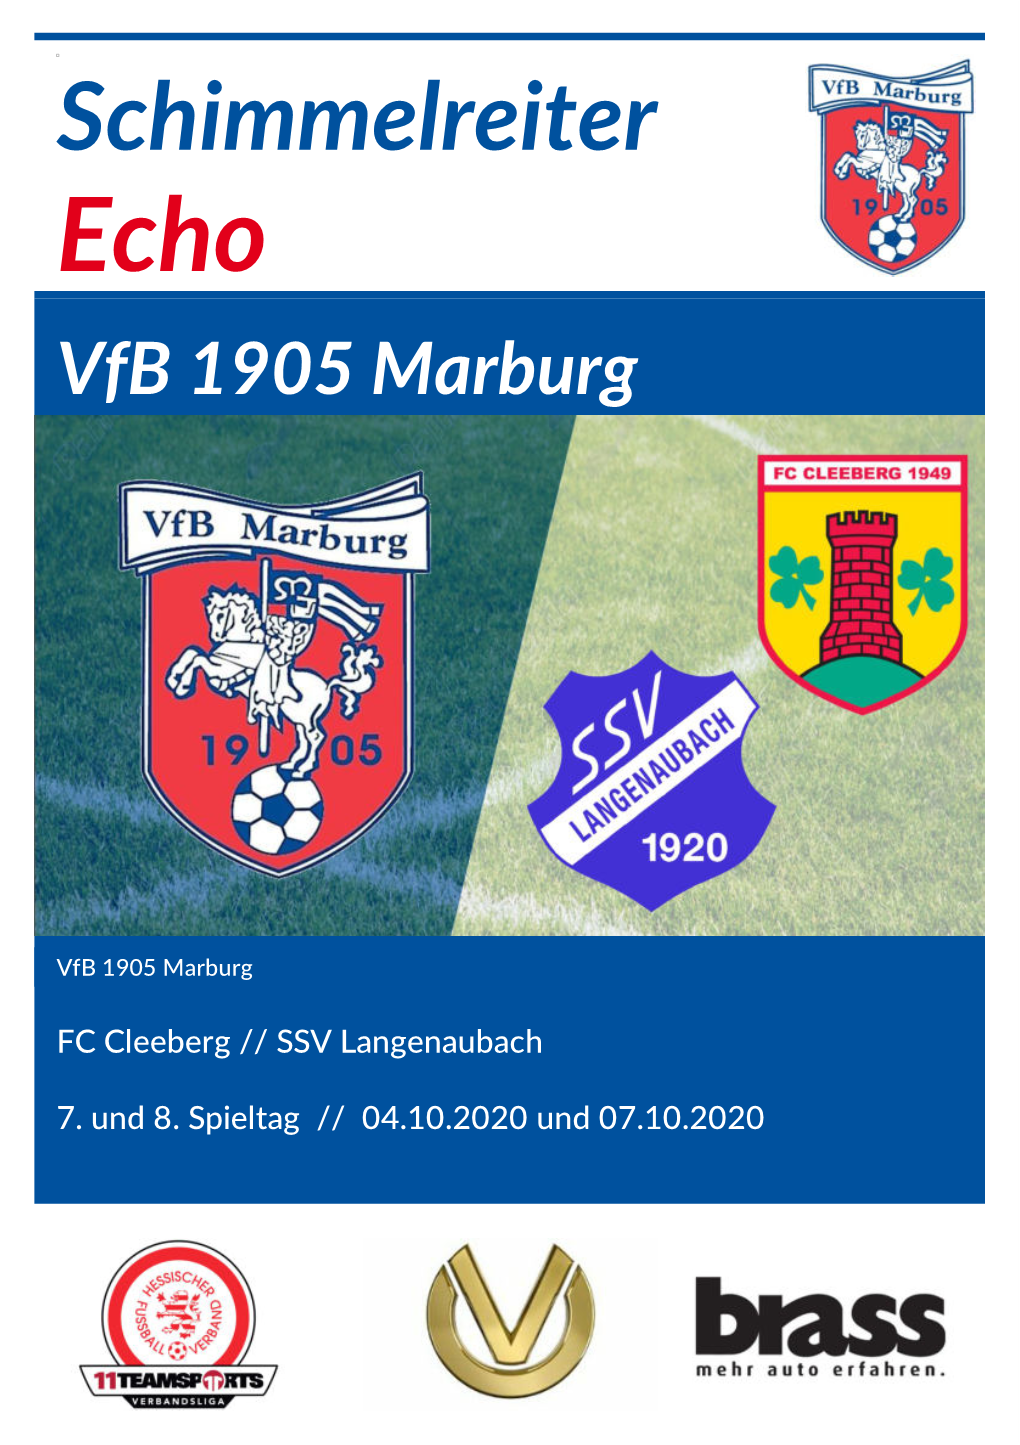 Schimmelreiter Echo Vfb 1905 Marburg